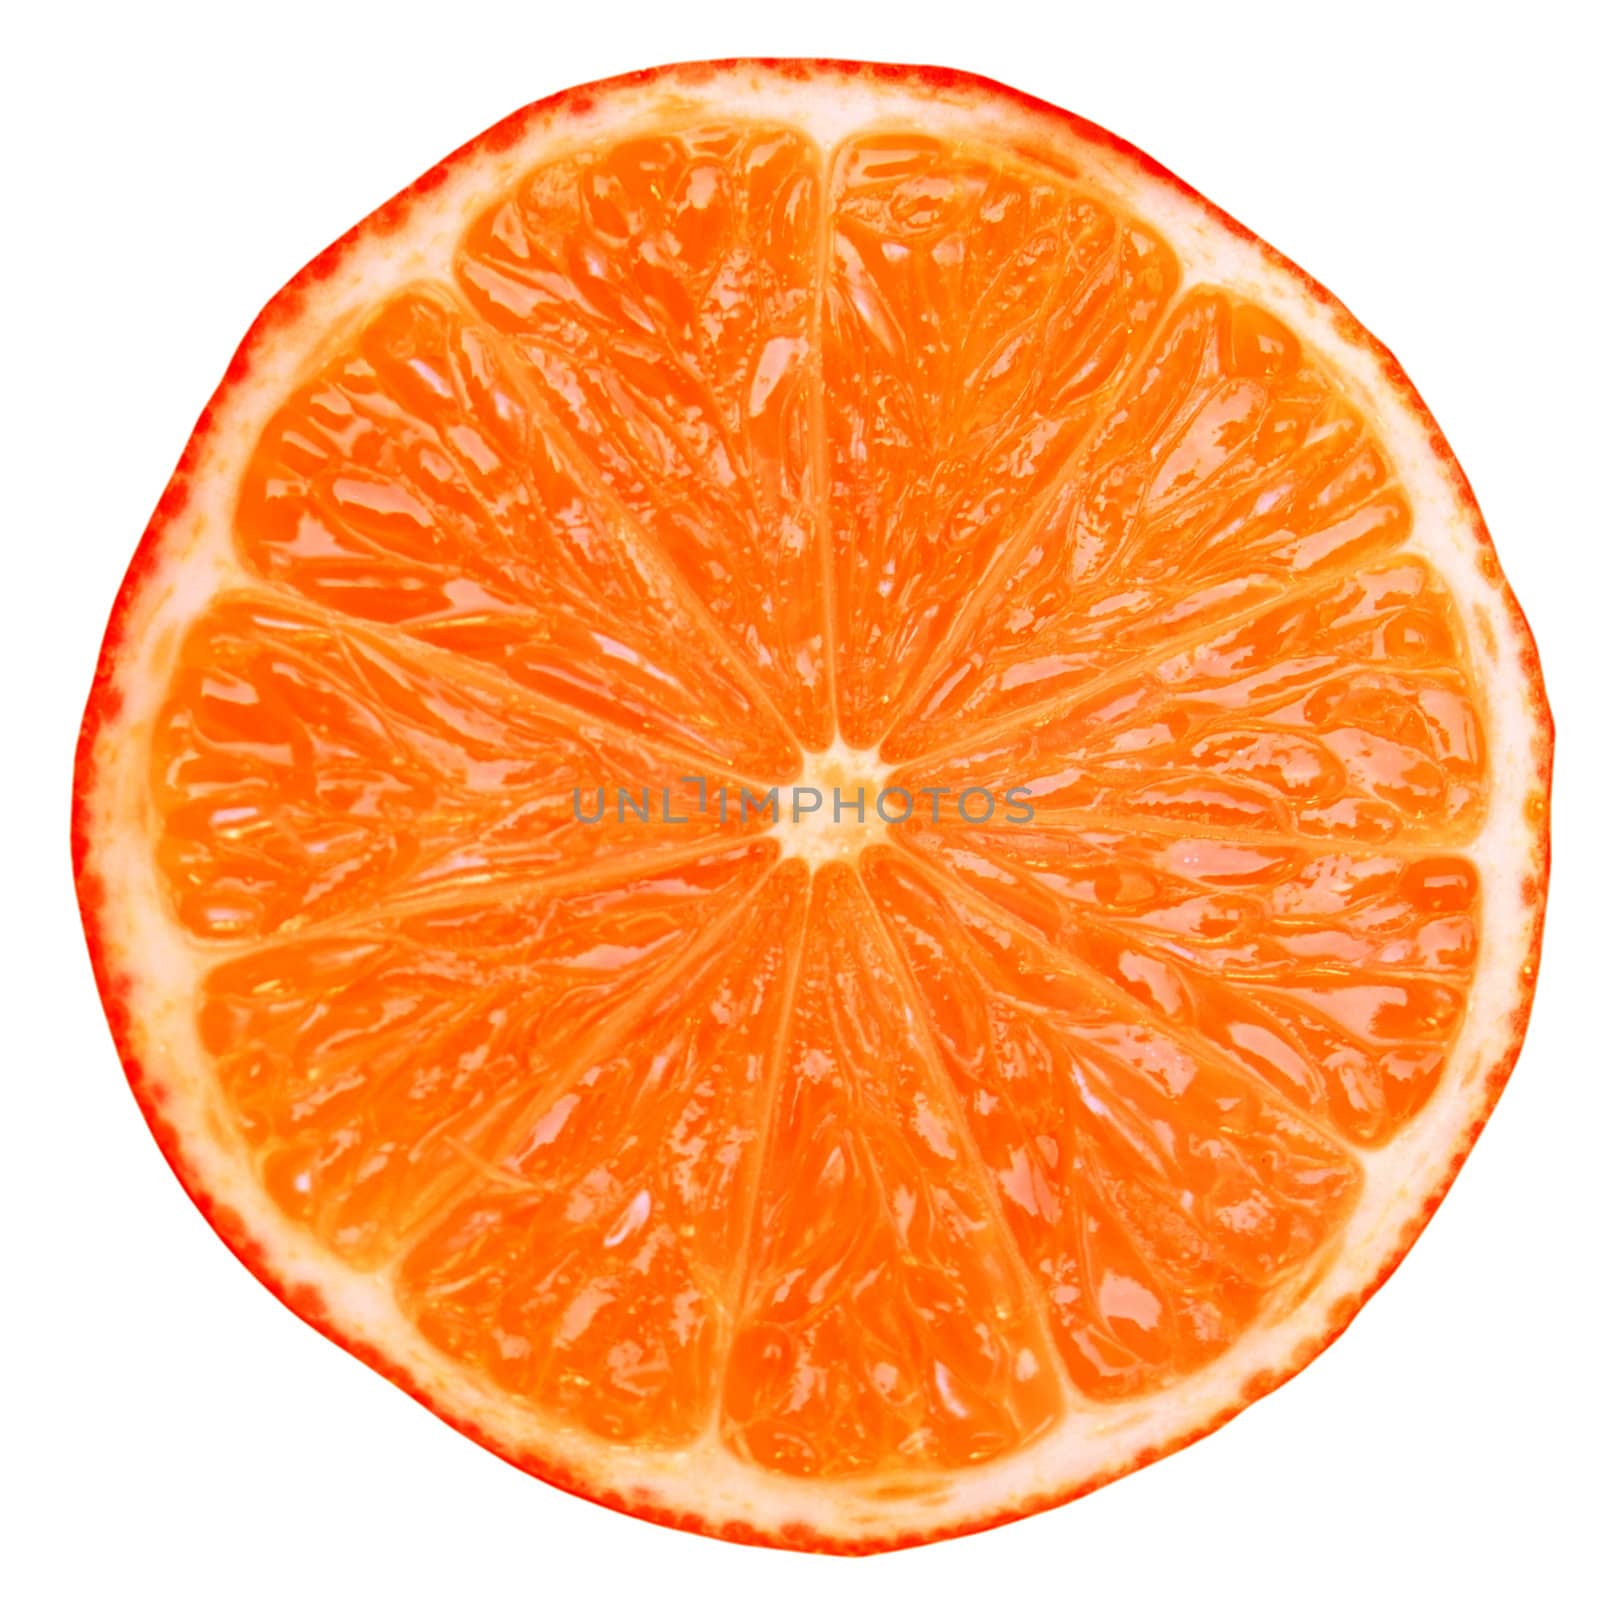 Red orange citrus slice